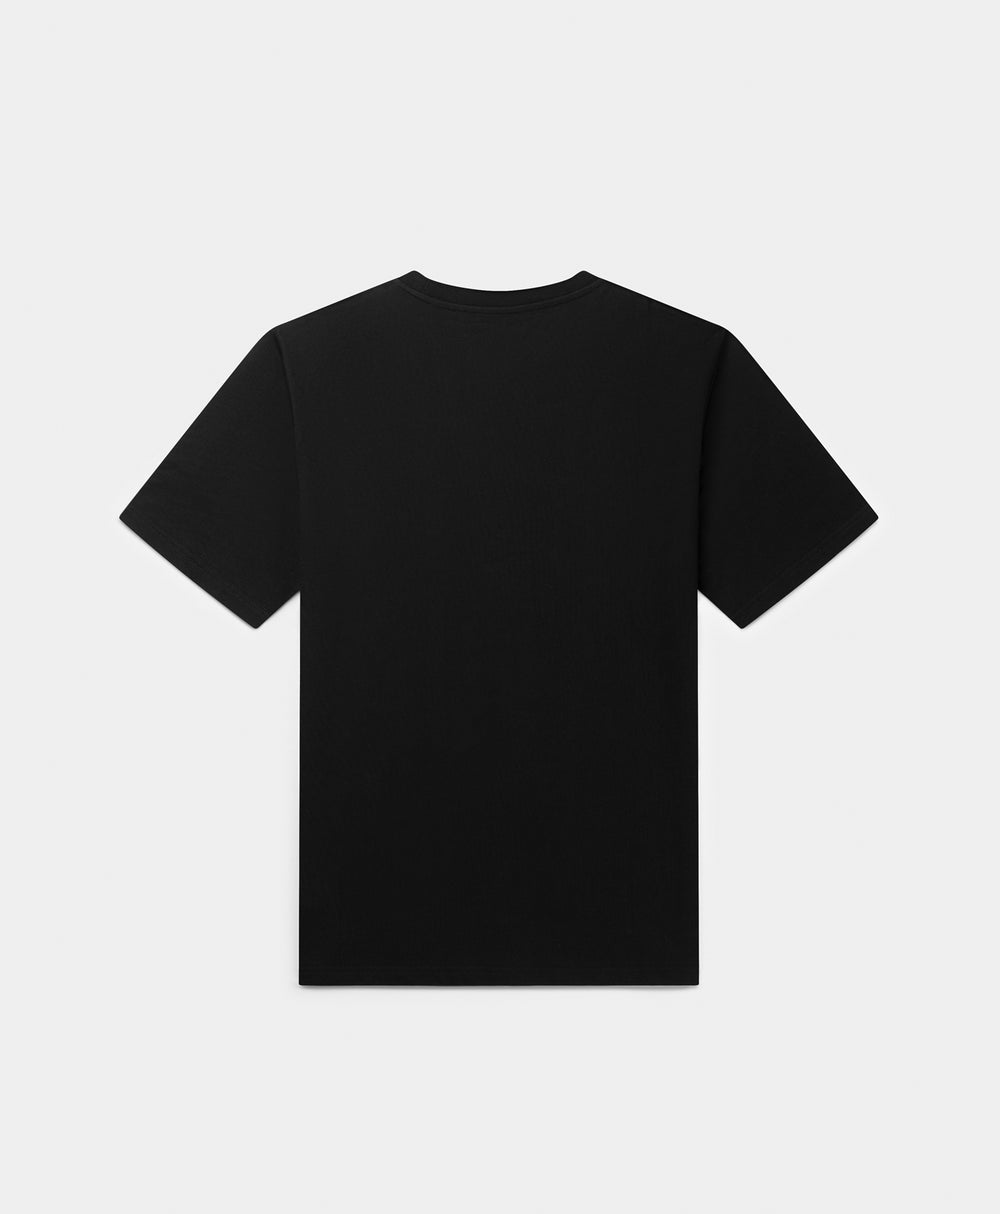 DP - Black R-type T-Shirt - Packshot - Rear